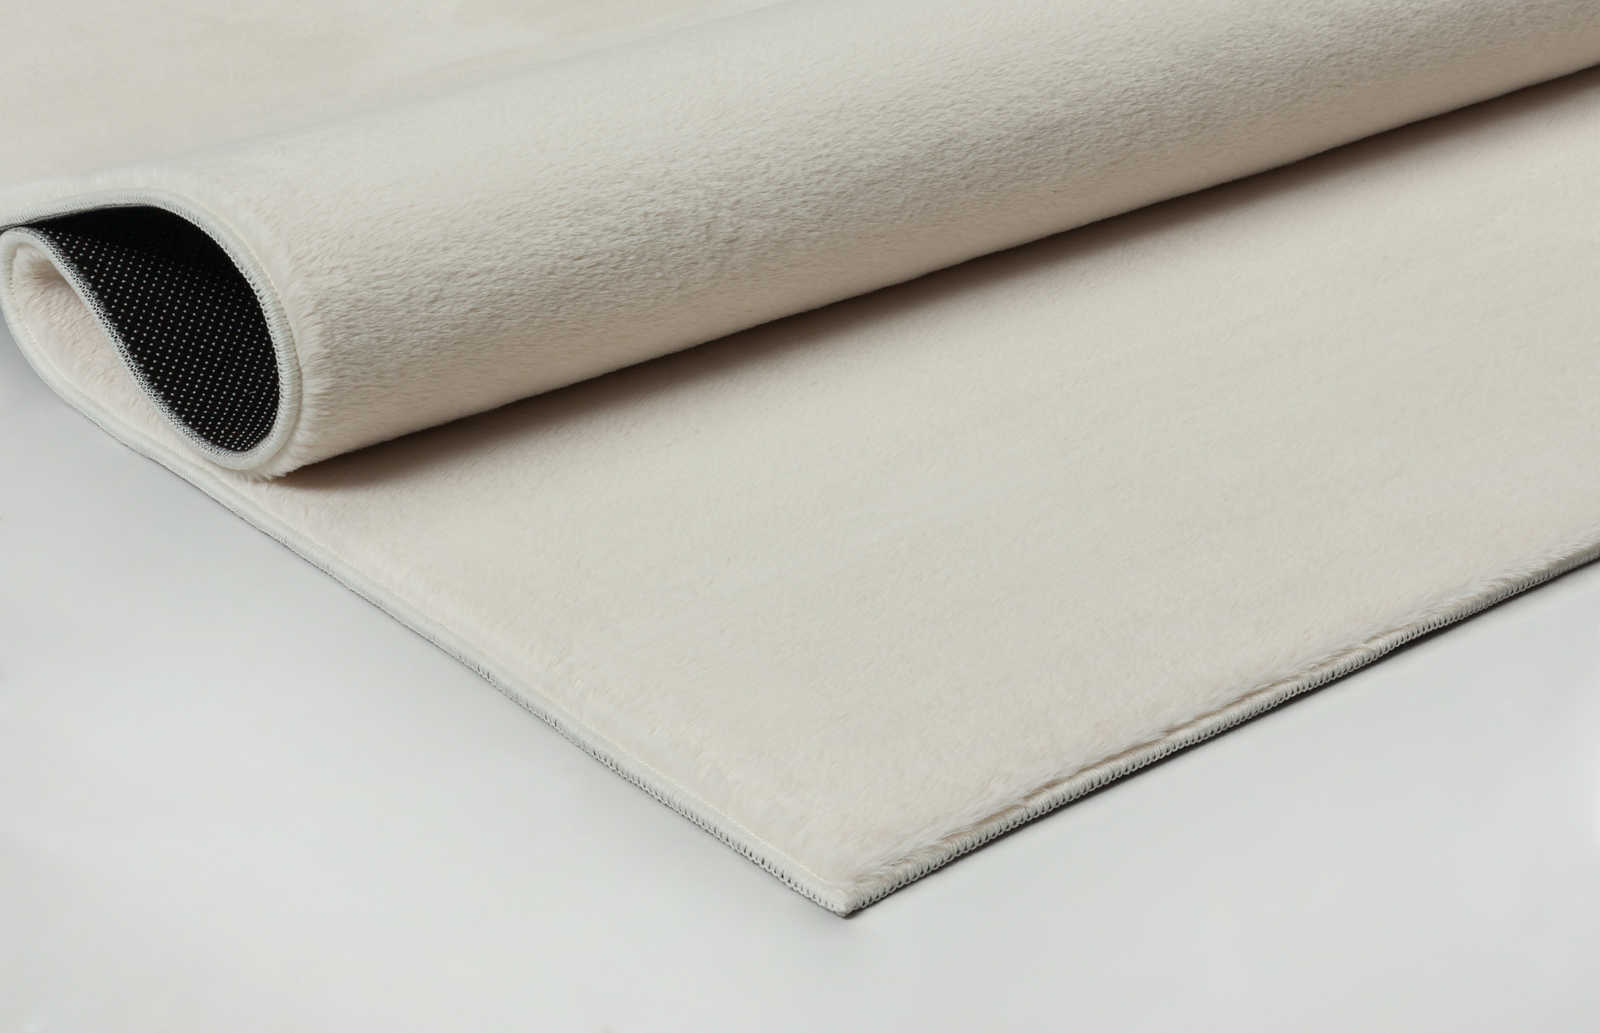             Zacht hoogpolig tapijt in crème - 340 x 240 cm
        